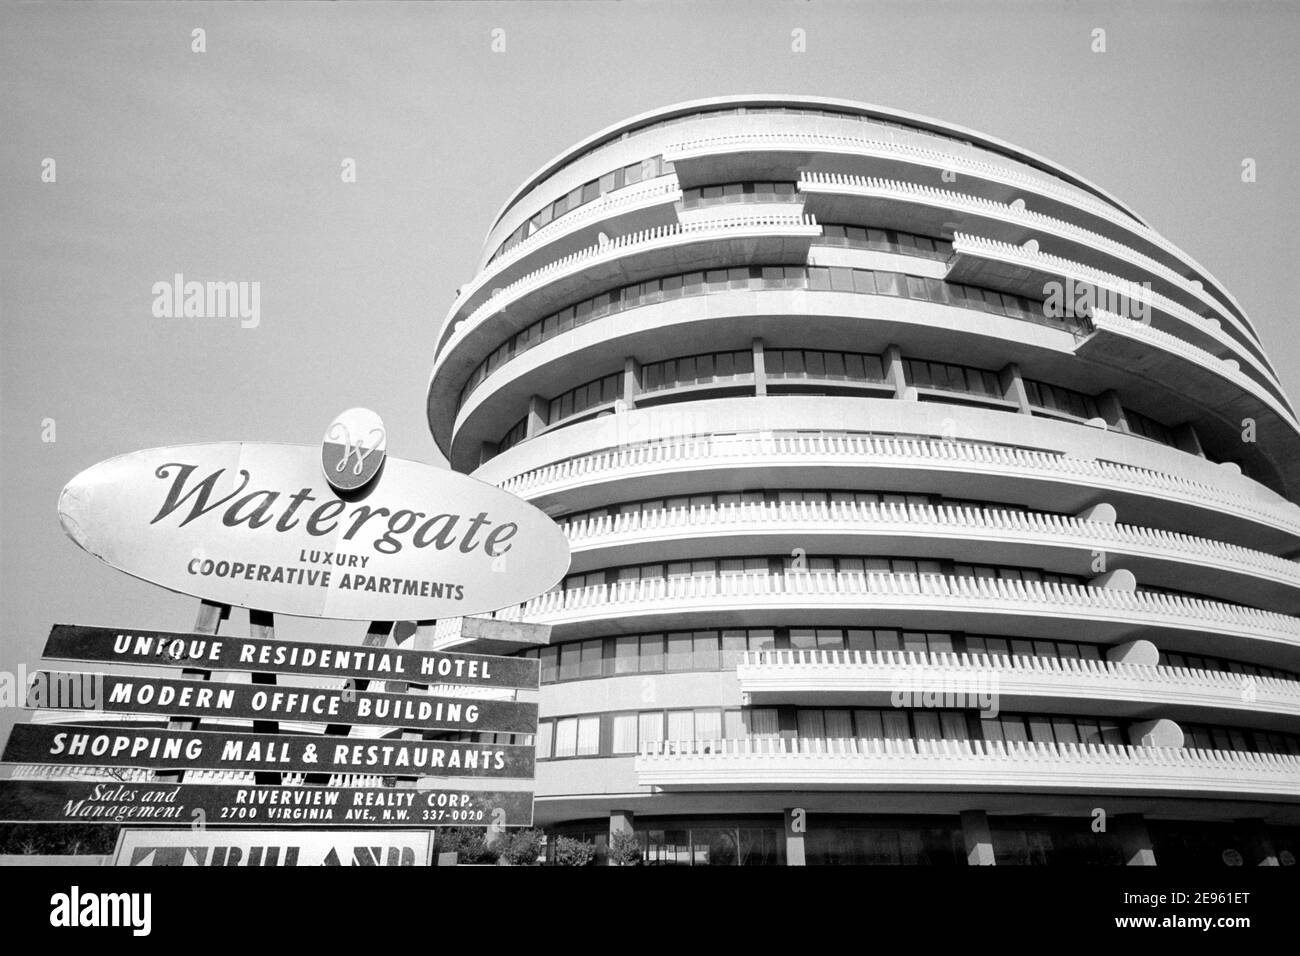 Watergate Complex, Foggy Bottom, Washington, D.C., États-Unis, Marion S. Trikosko, 26 novembre 1965 Banque D'Images